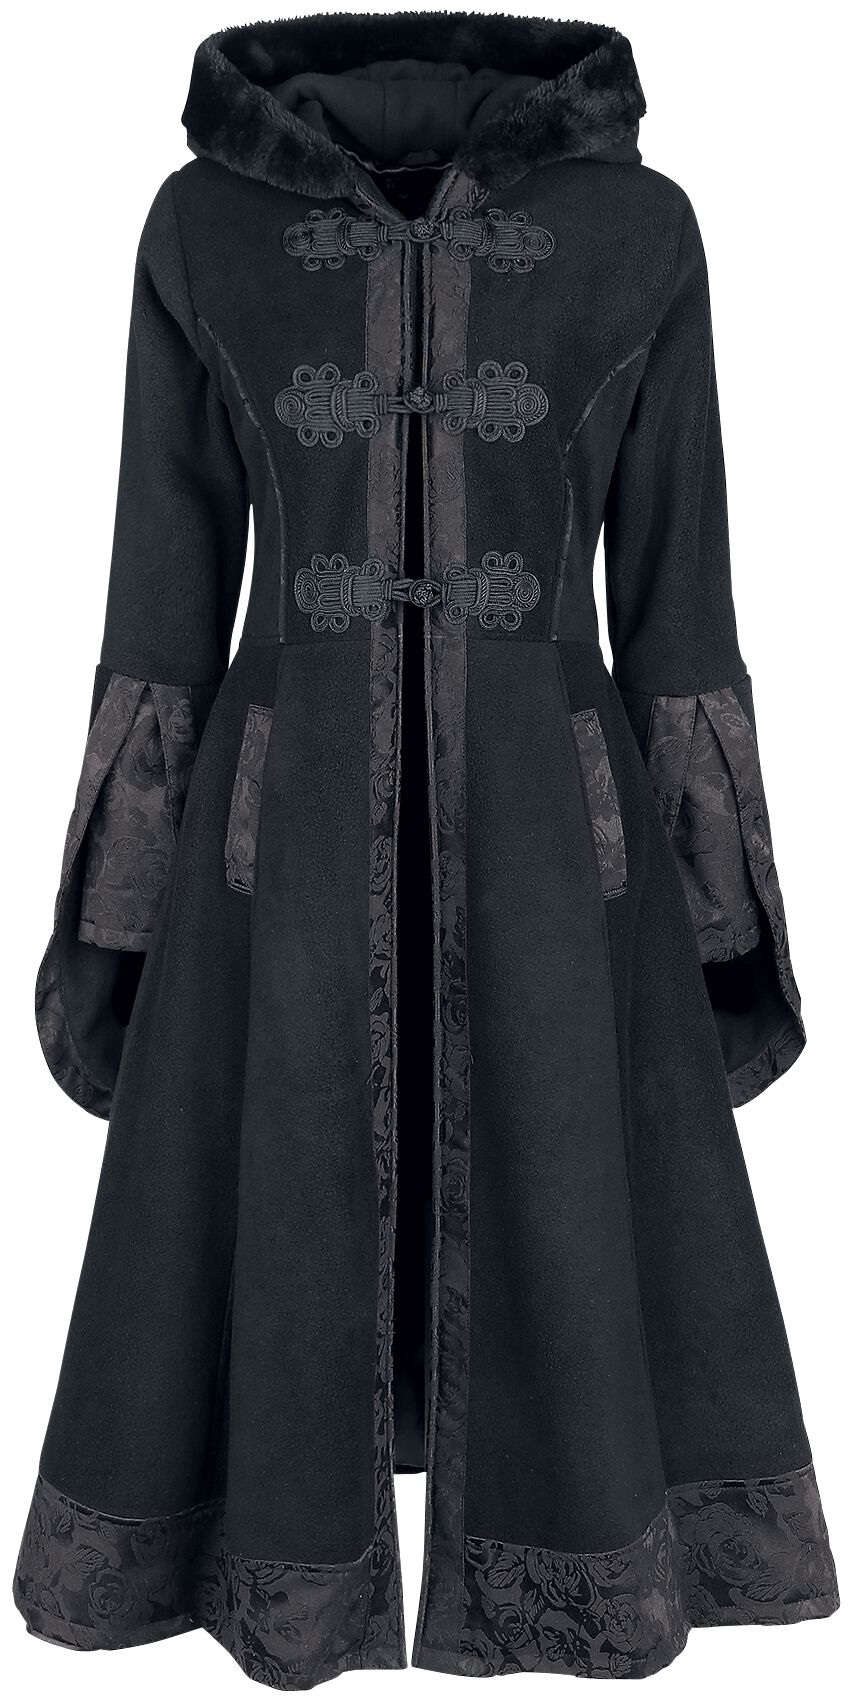 Poizen Industries Luella Coat Mantel schwarz in M